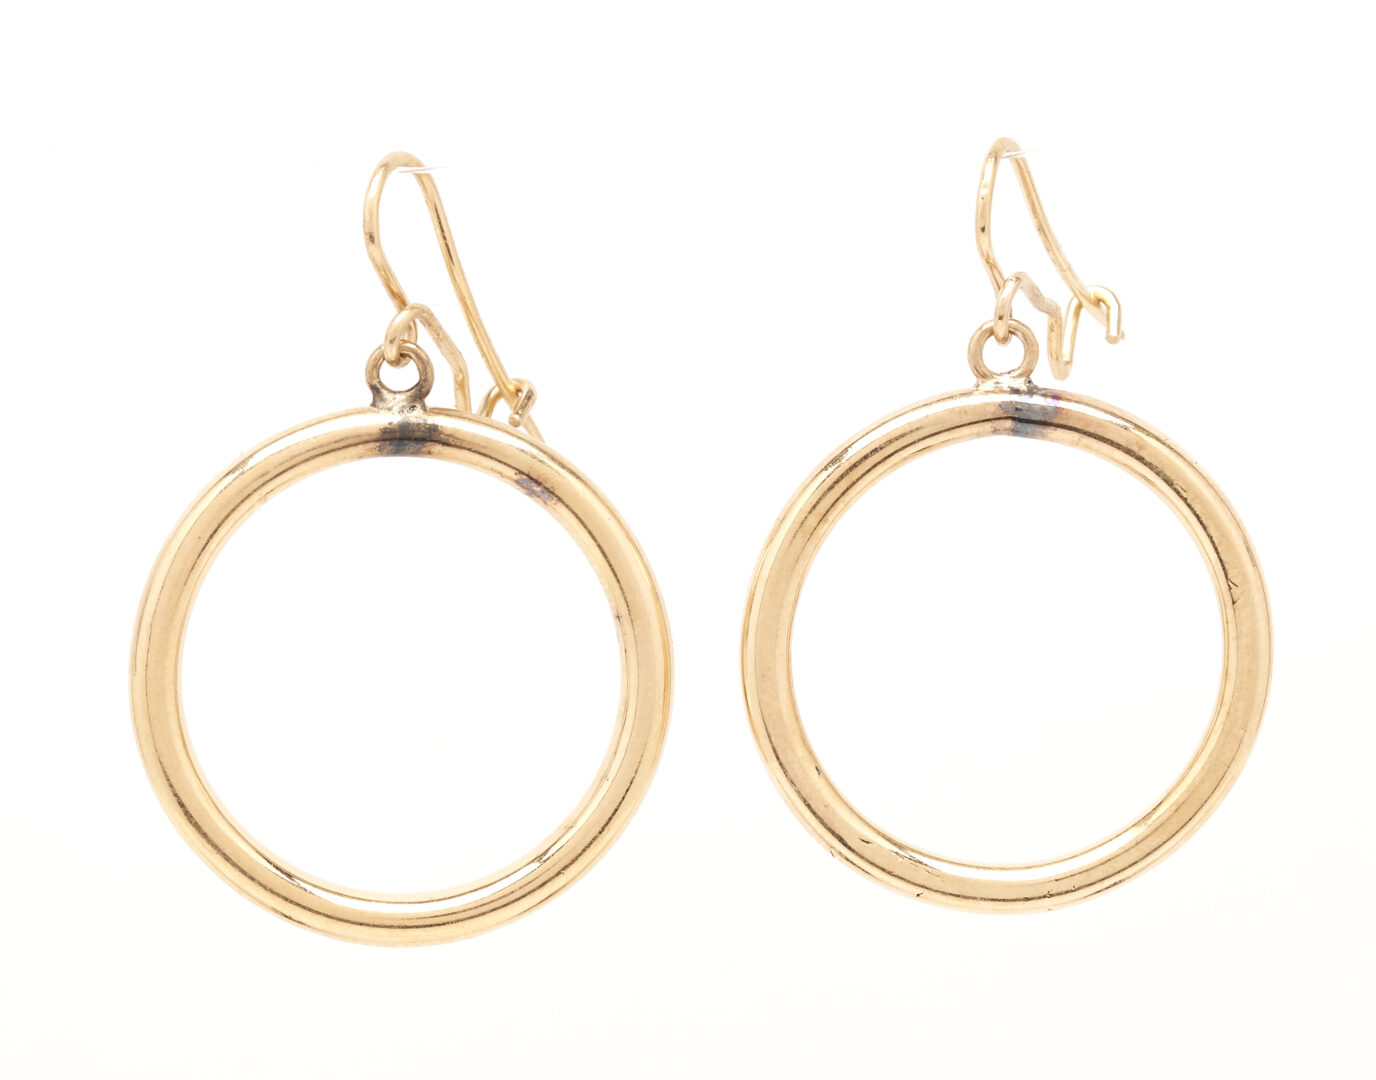 Lot 223: 3 Pairs of Ladies' Gold Hoop Earrings